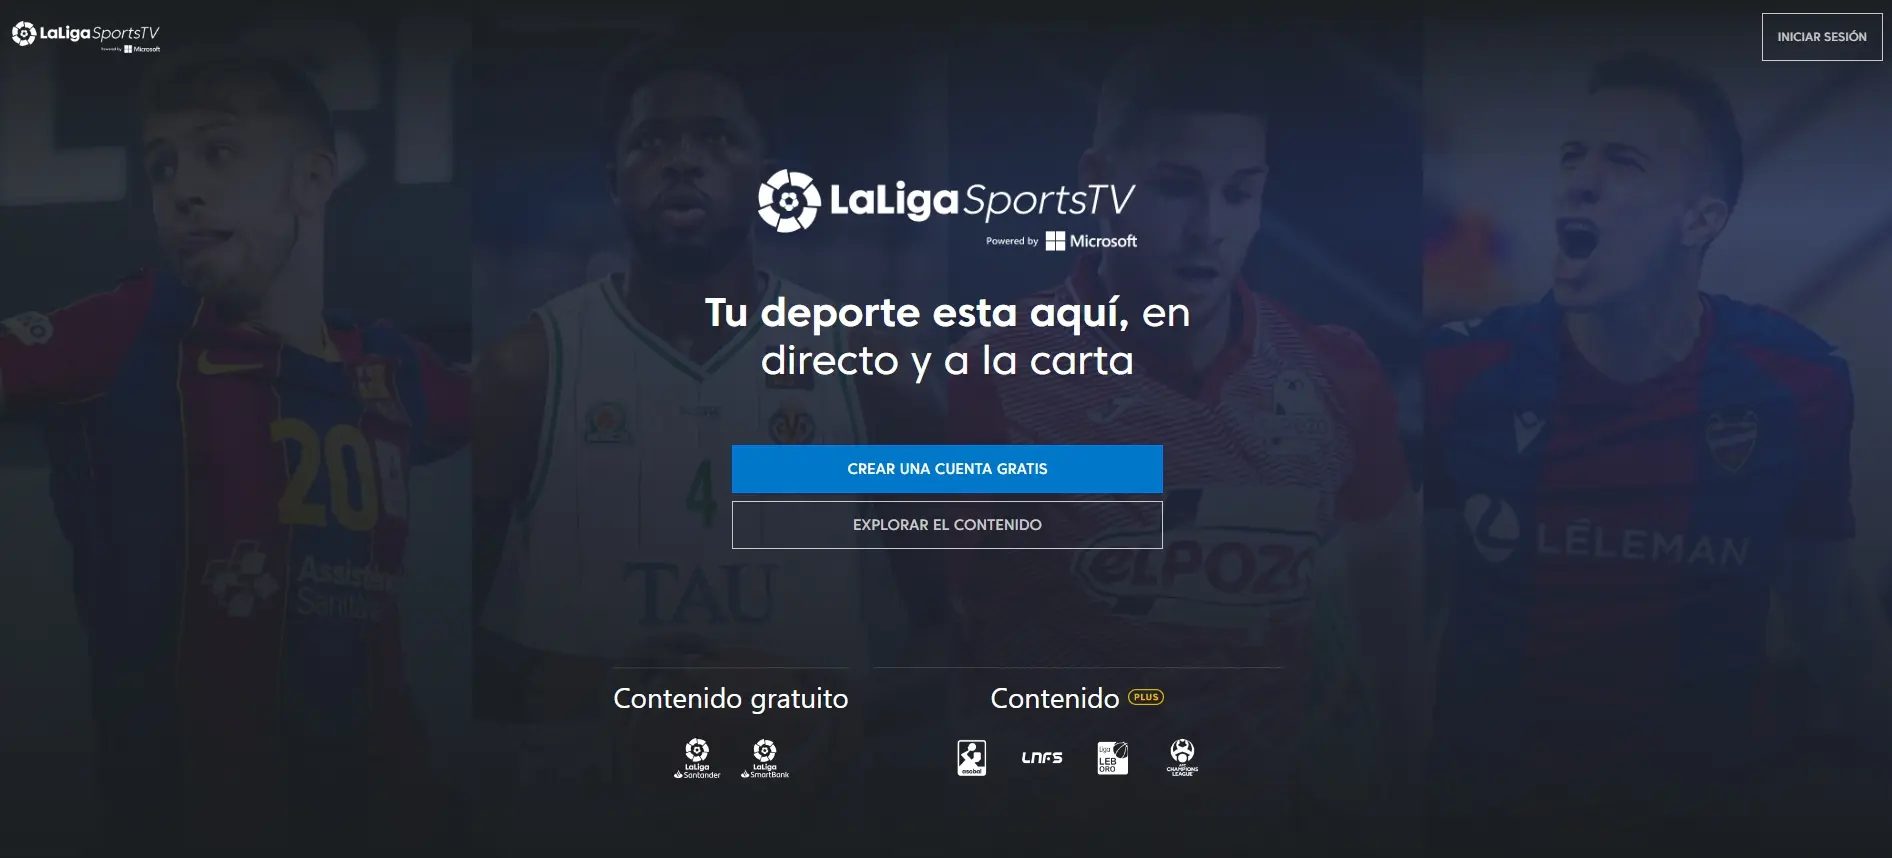 라리가 실시간으로 중계 보는곳 LaLigaSportsTV